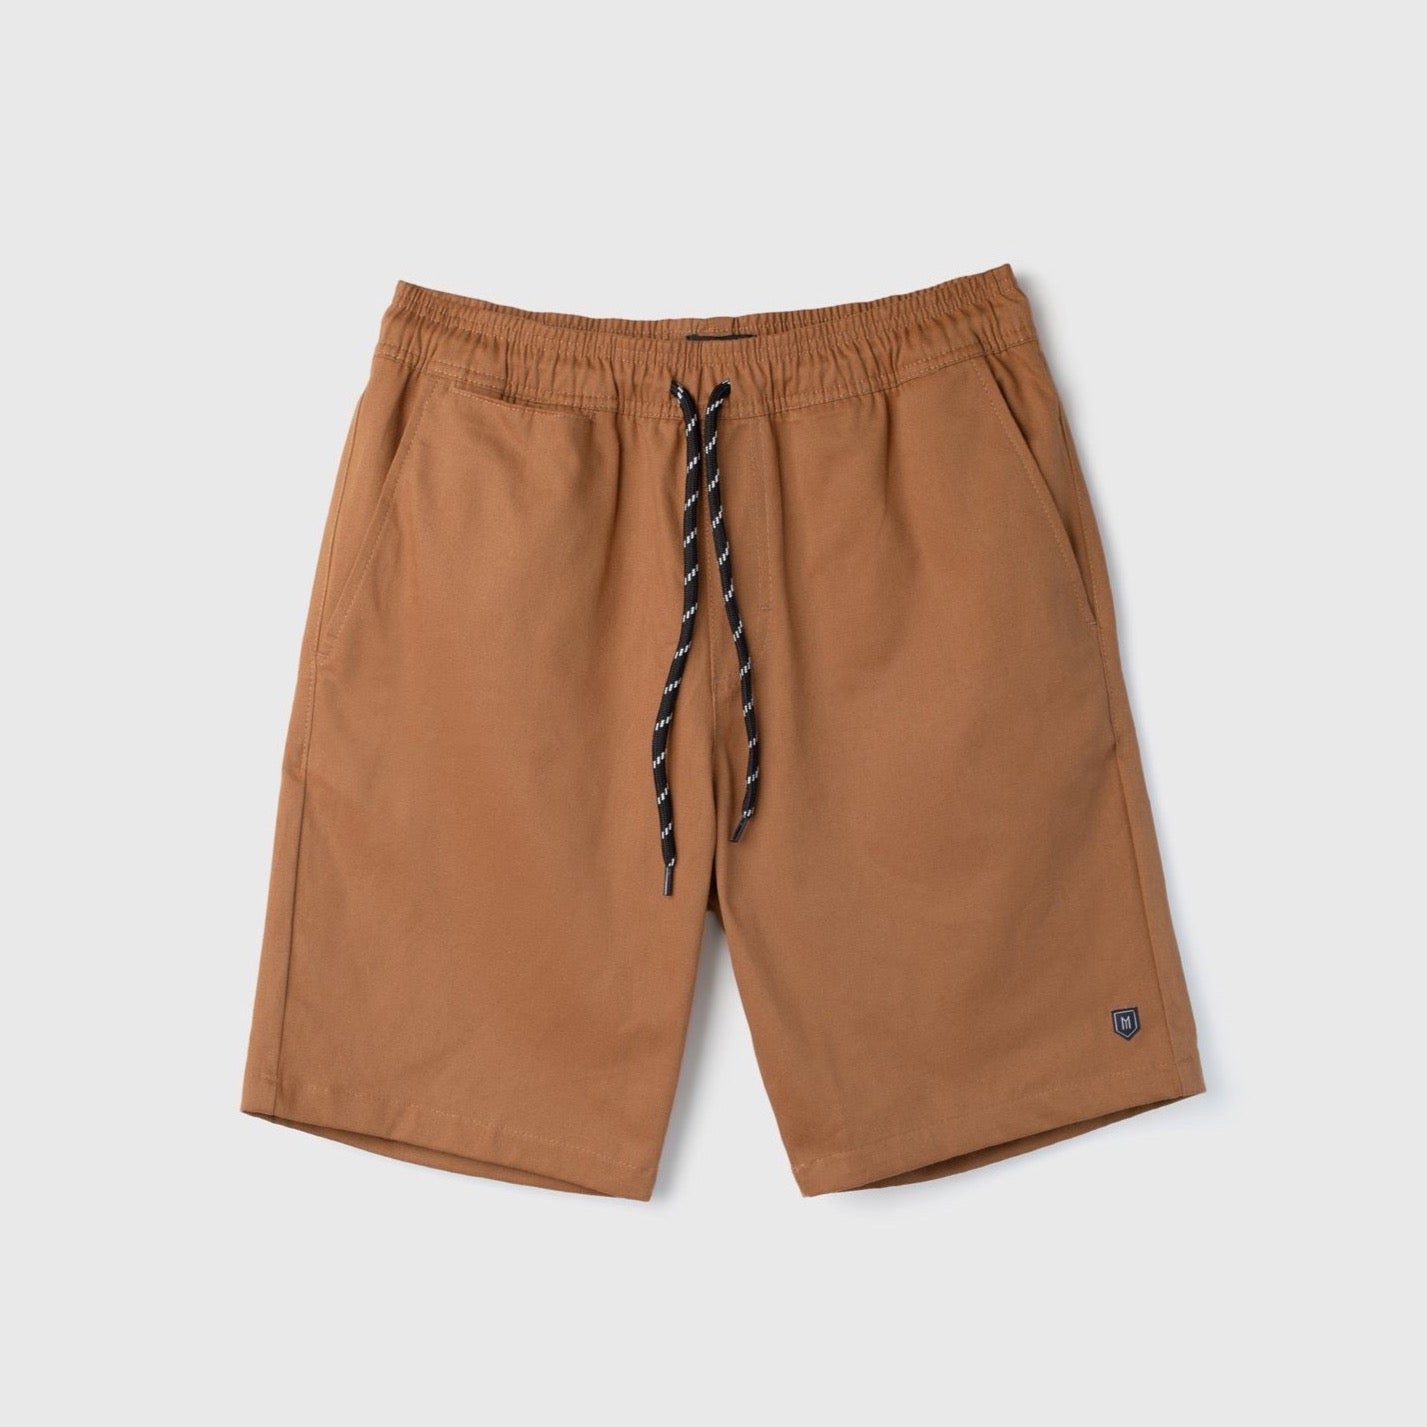 Lenny Chino Shorts (Marrom) - Mufa Brand